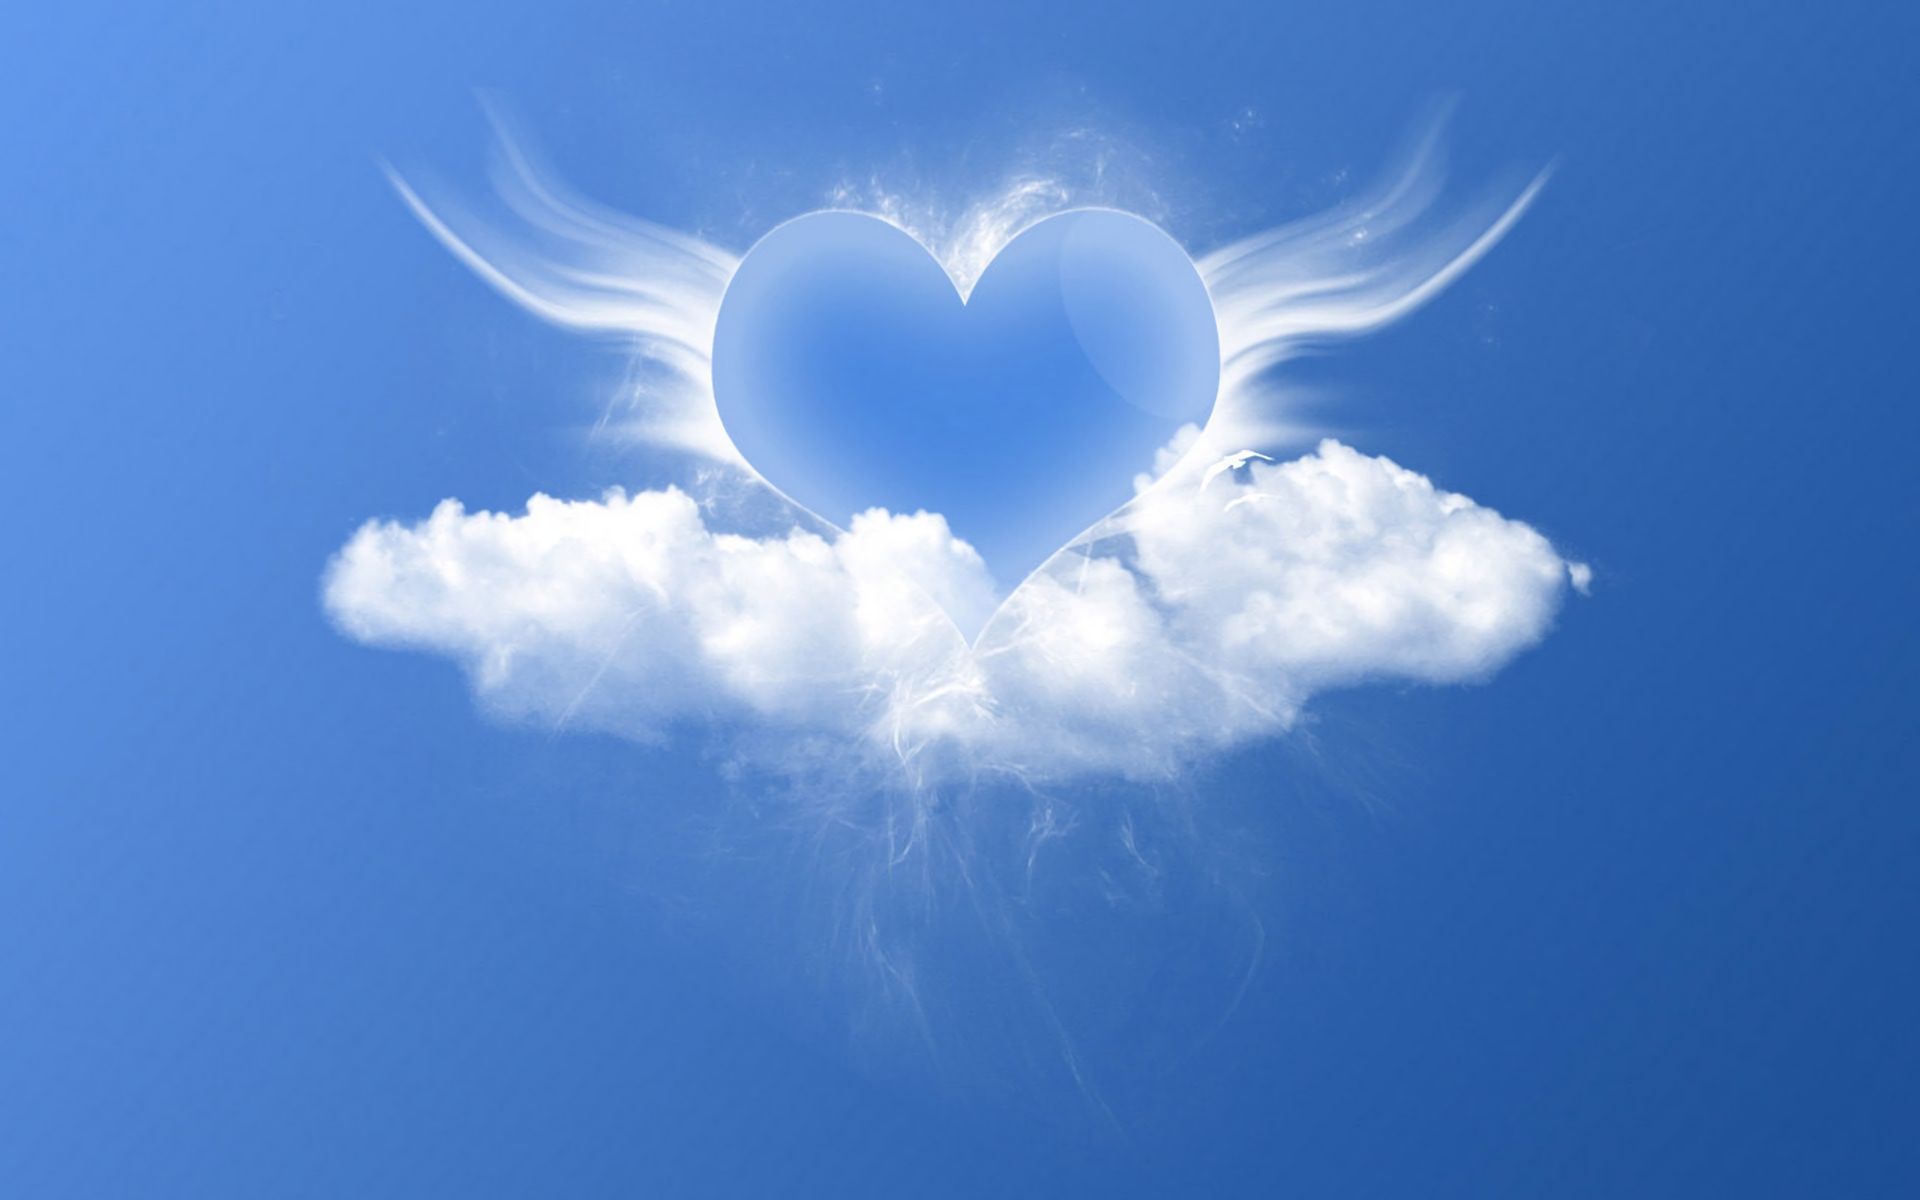 Скачать обои бесплатно Небо, Облака, Крылья, Сердце, Художественные картинка на рабочий стол ПК